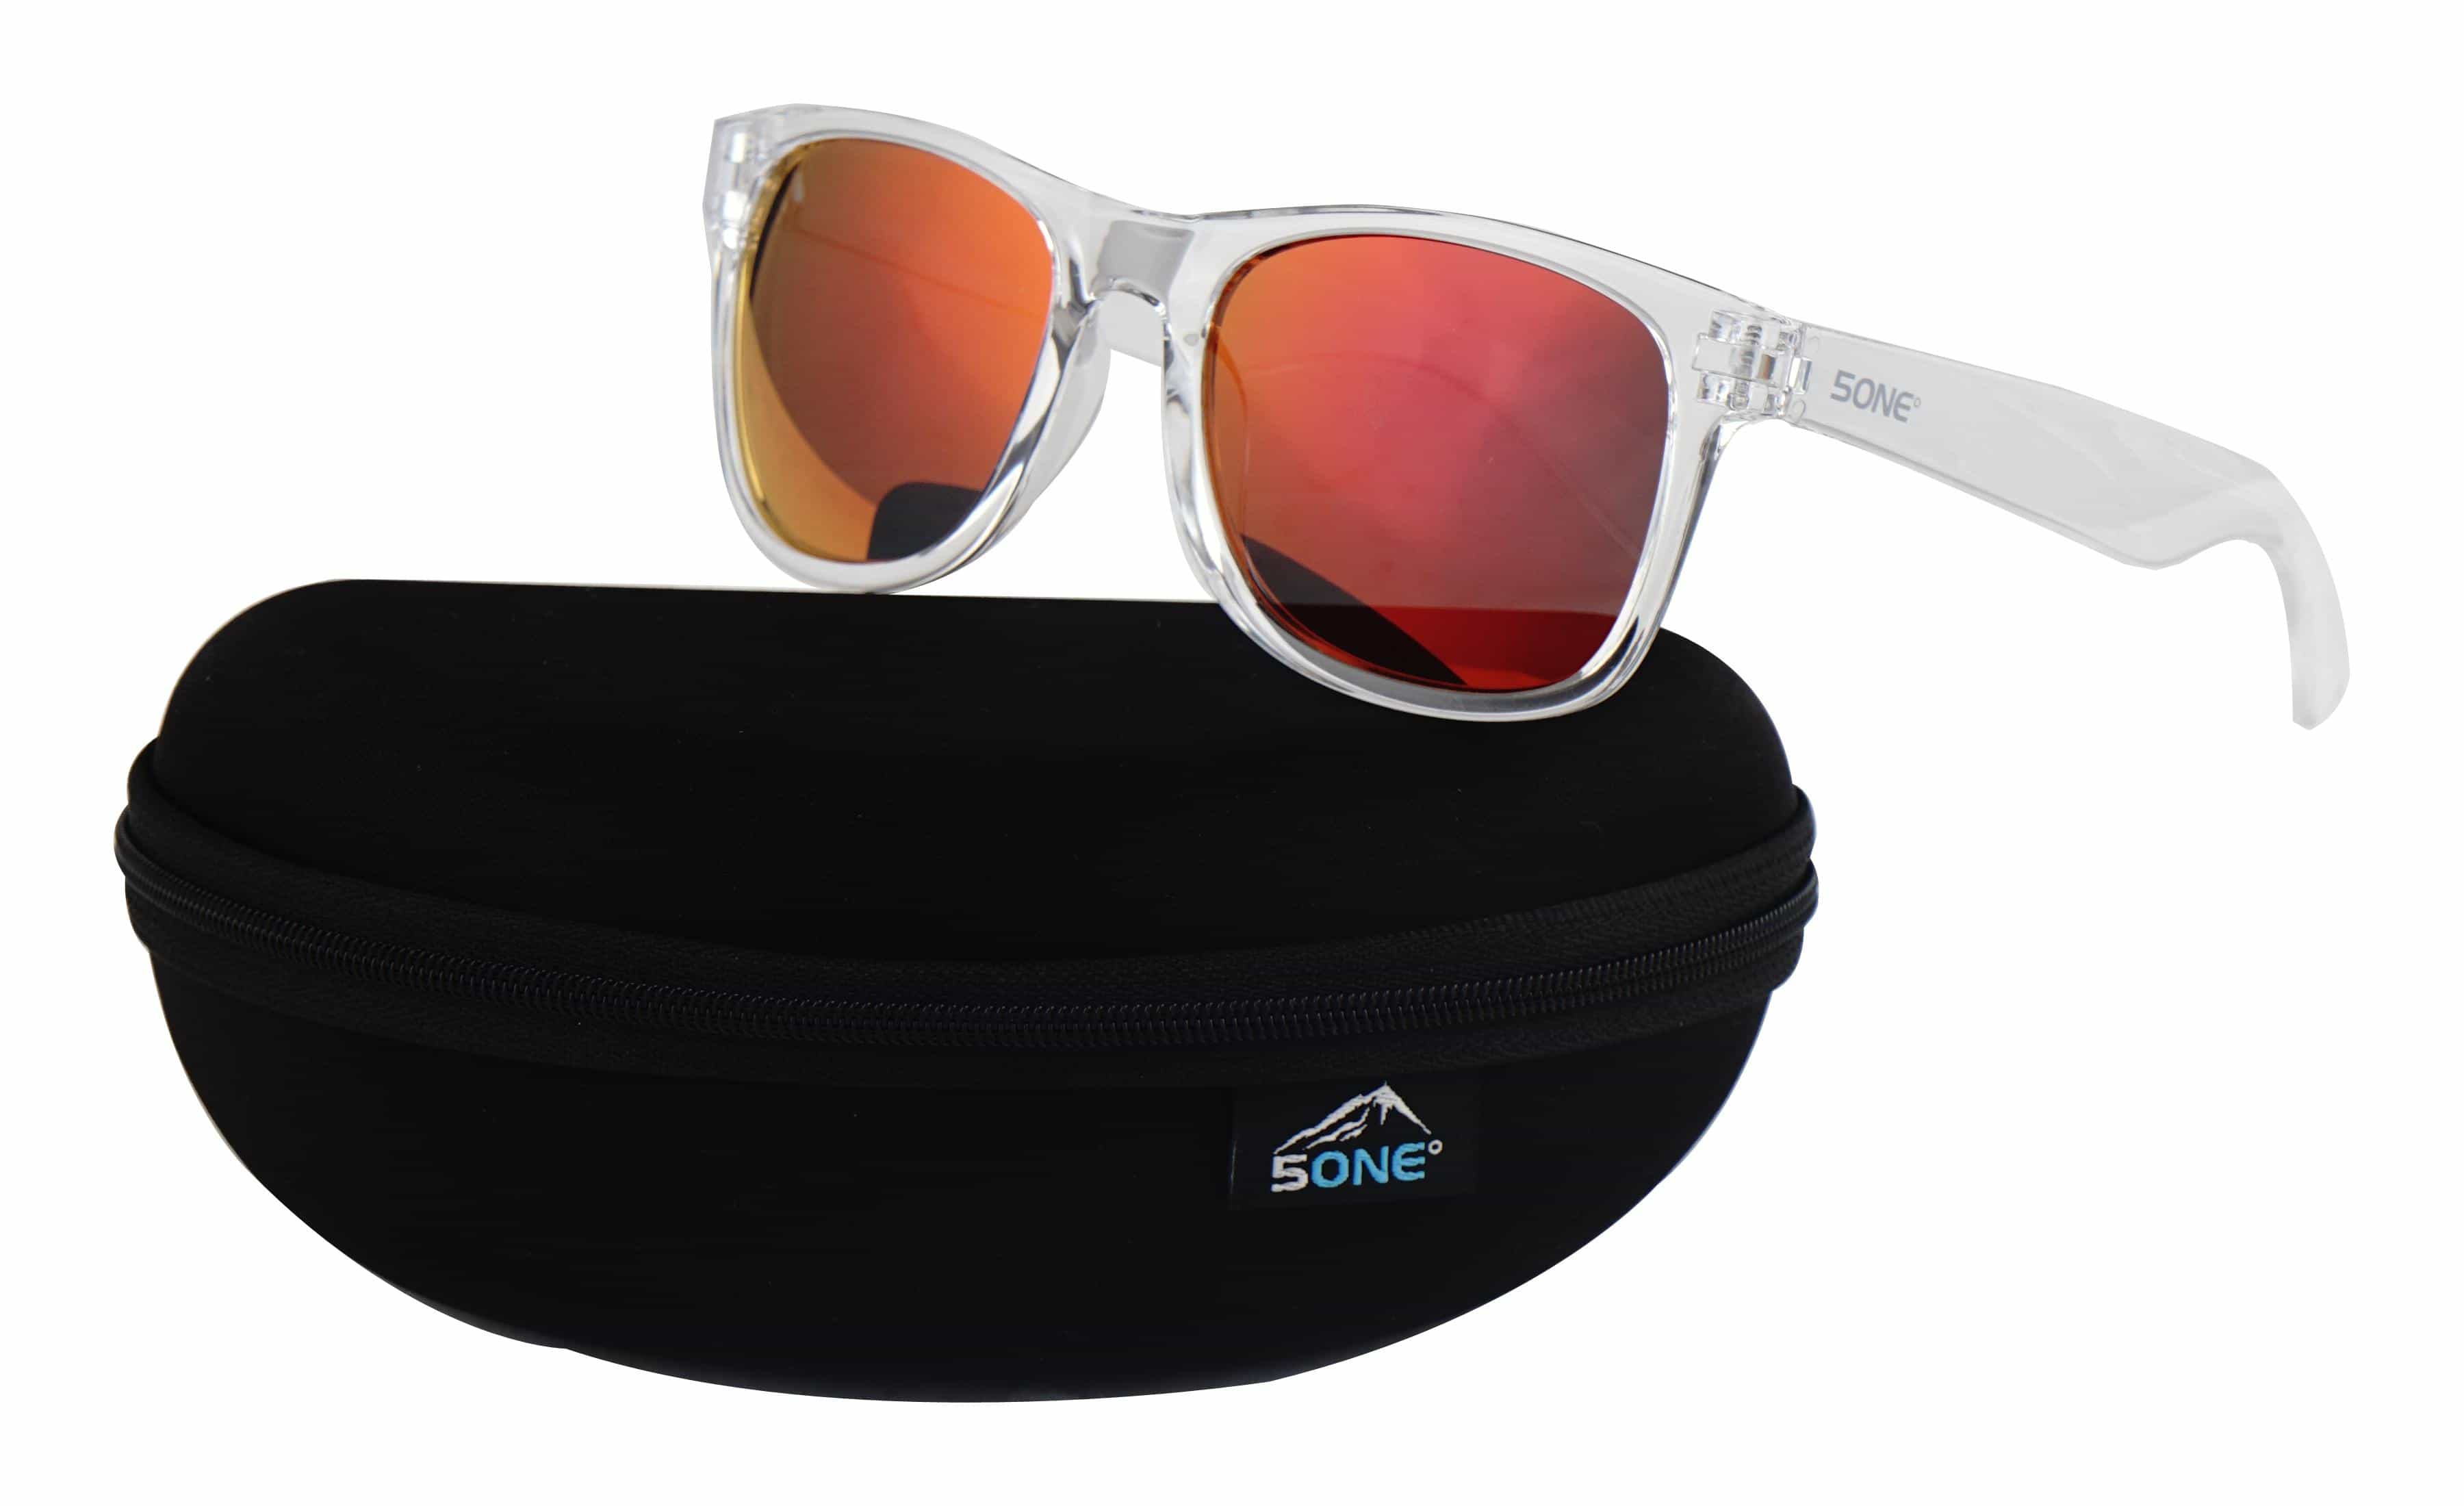 5one® Crystal Red zonnebril - transparant frame - rode spiegellens